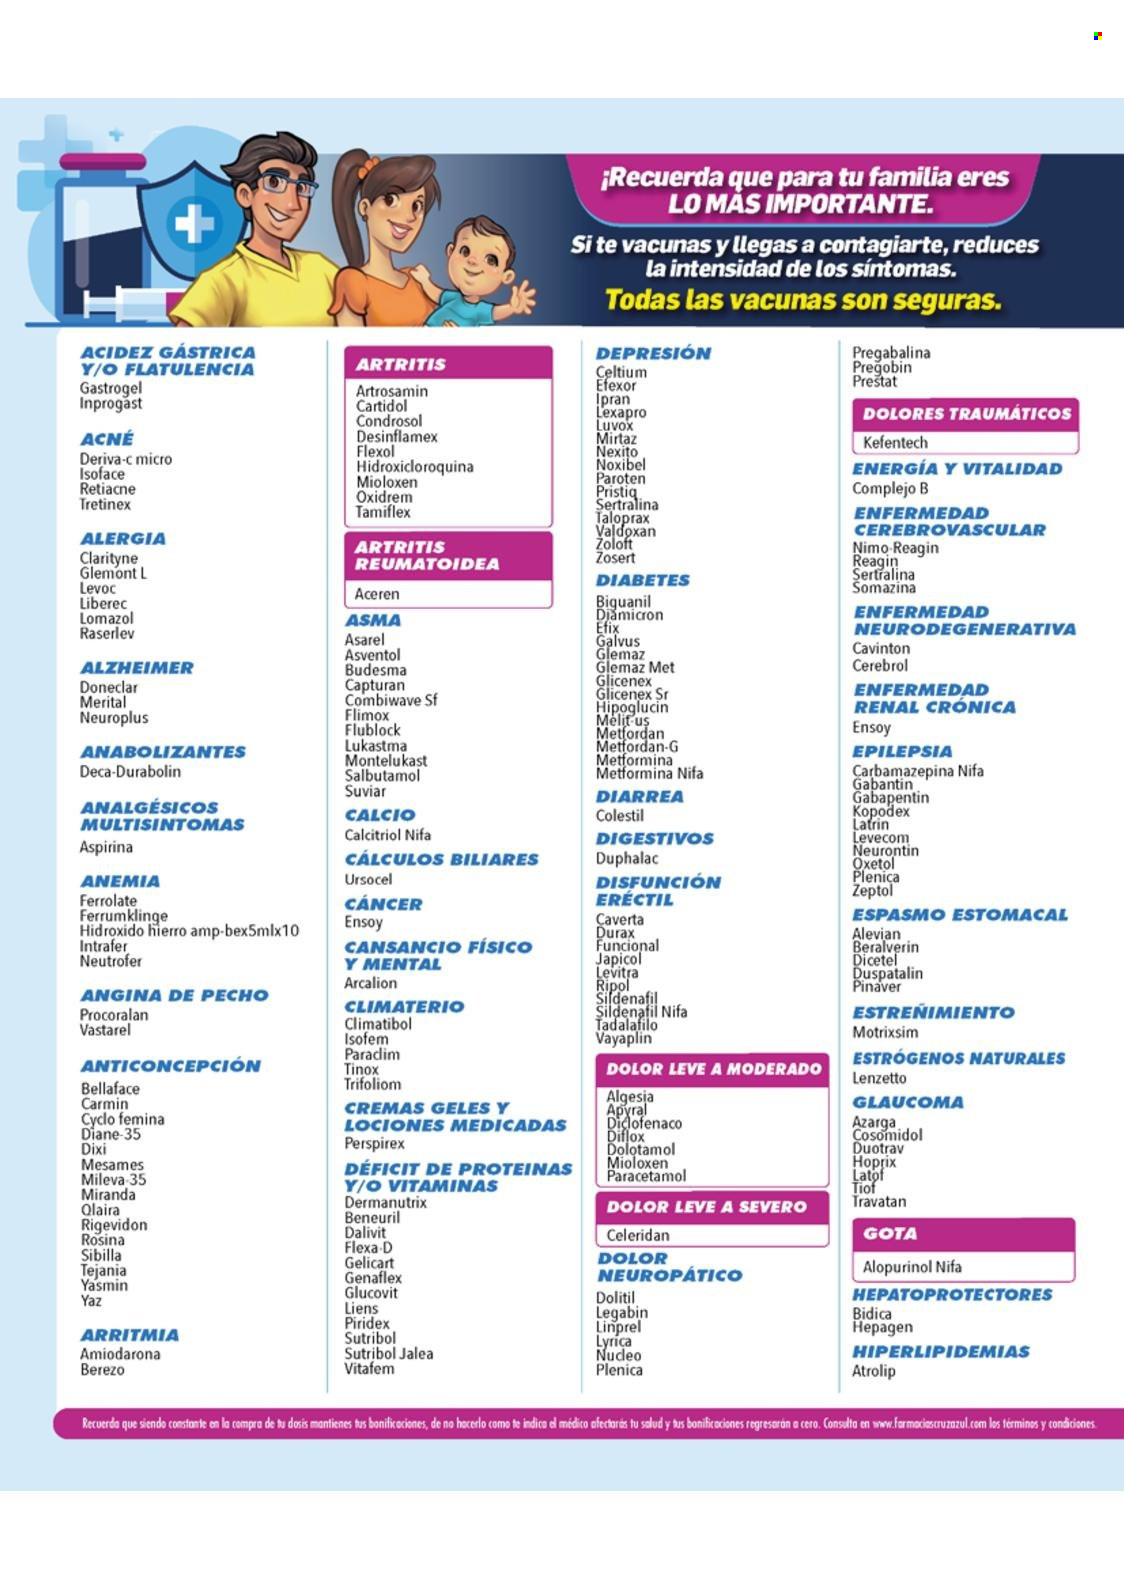 Catálogo Farmacias Cruz Azul - 2.10.2021 - 31.10.2021.